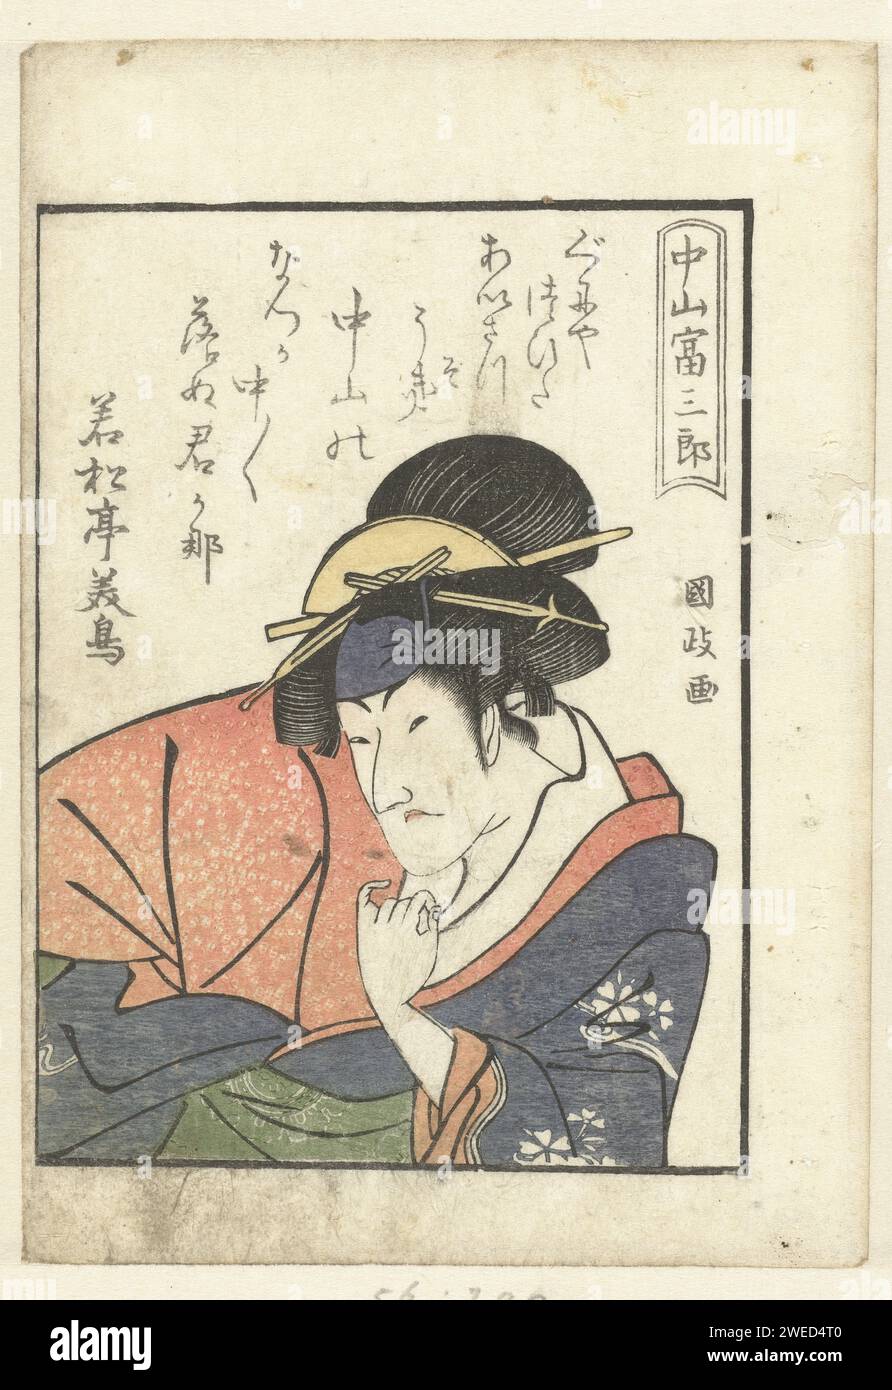 Liefdesgedicht VOOR NAKAYAMA TOMISABURO, UTAGAWA KUNIMASA, 1799 tirage BostePortret de l'acteur Nakayama Tomisaburo I, dans le rôle féminin avec kimono rouge et bleu et Groene OBI, représenté sous un poème d'amour qui lui est adressé. Feuille du livre japonais Yakusha Gakuya TSU. Ou portrait sur bois couleur papier de l'acteur, actrice Banque D'Images